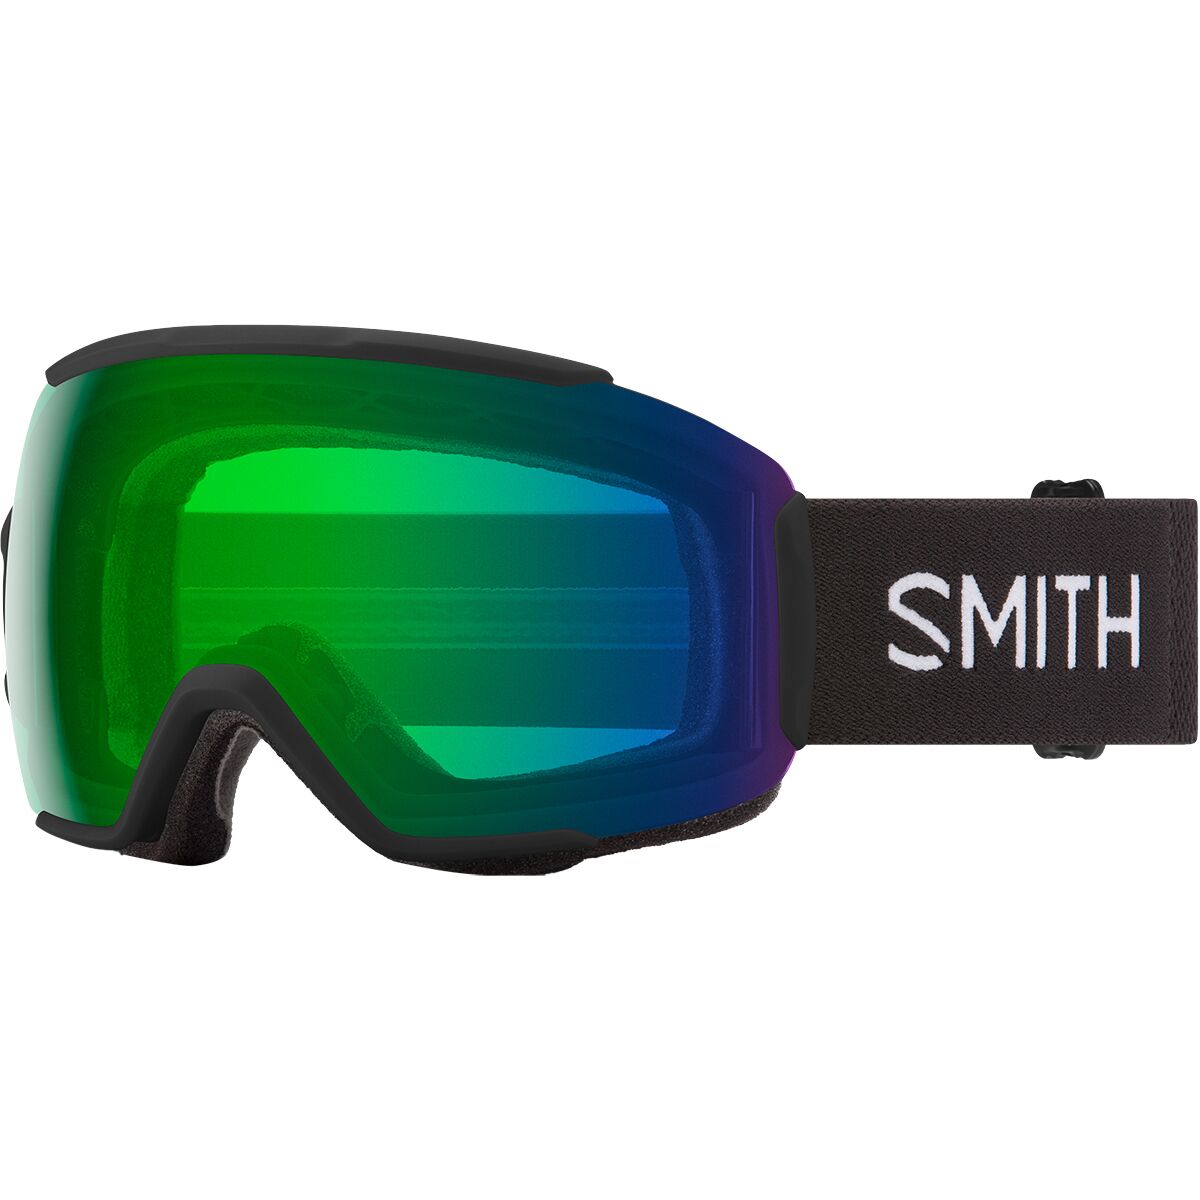 Photos - Ski Goggles Smith Sequence OTG Goggles 